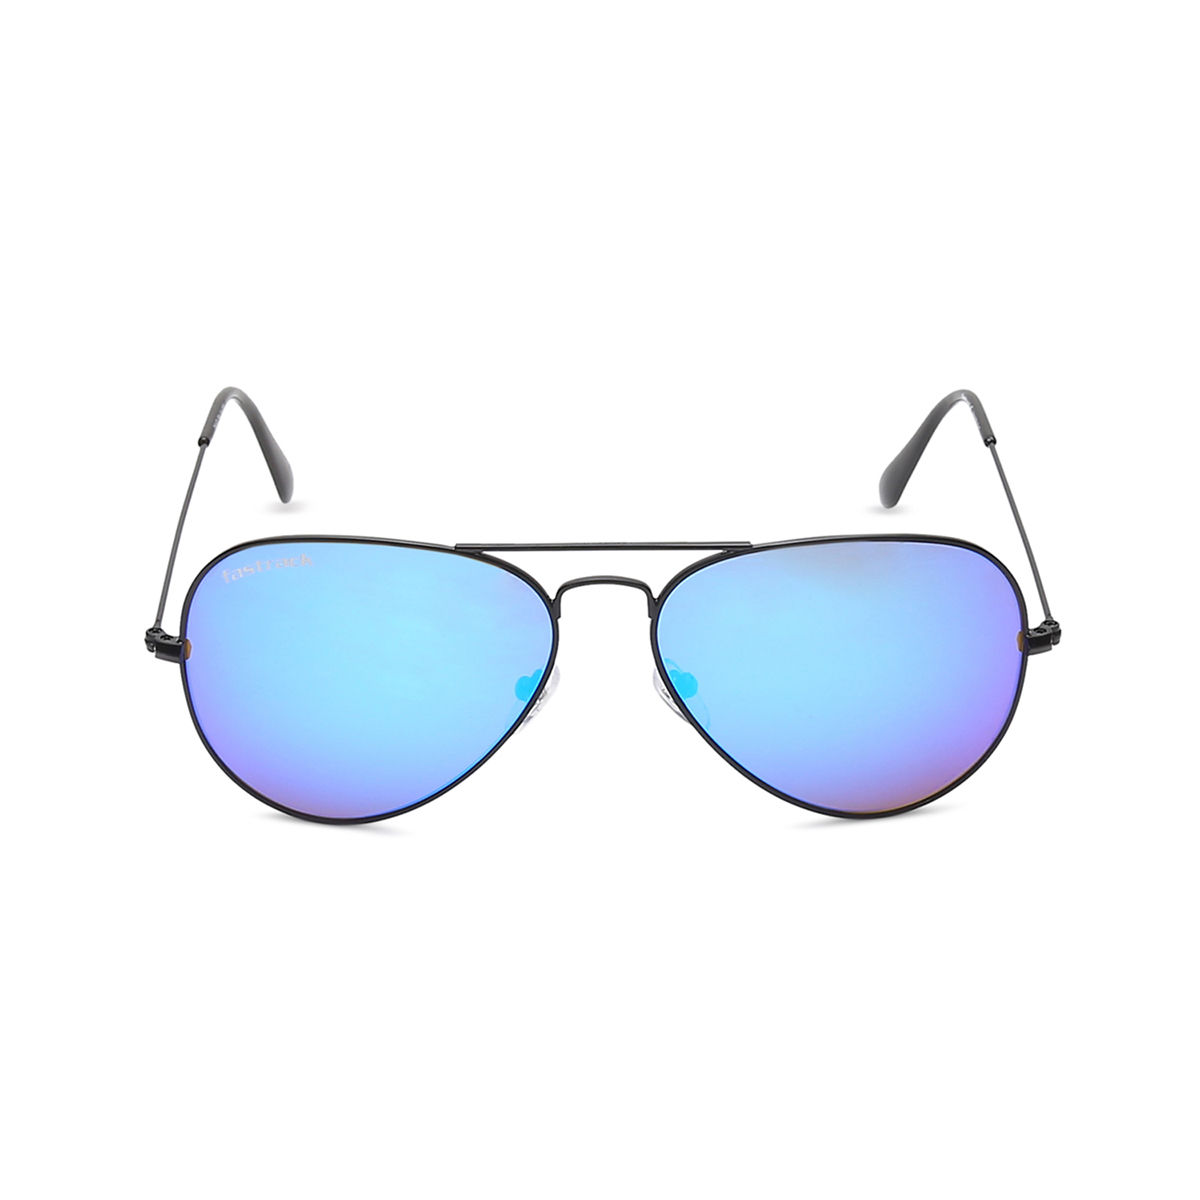 Buy Fastrack Aviator Sunglasses Grey, Black For Men Online @ Best Prices in  India | Flipkart.com